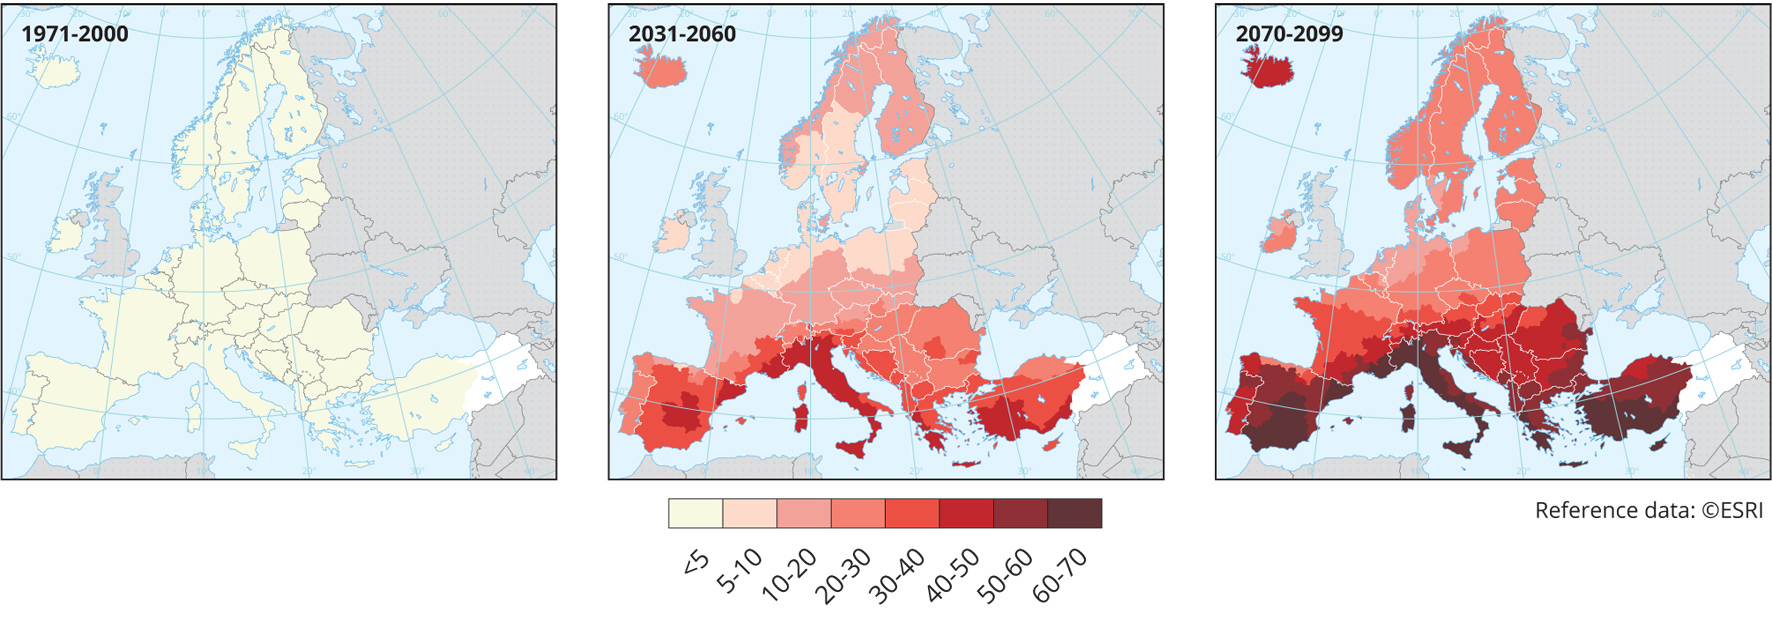 Wartości średniej obszarowej rocznej temperatury powietrza oraz klasyfikacja termiczna w 2022 r. w poszczególnych regionach klimatycznych Polski.